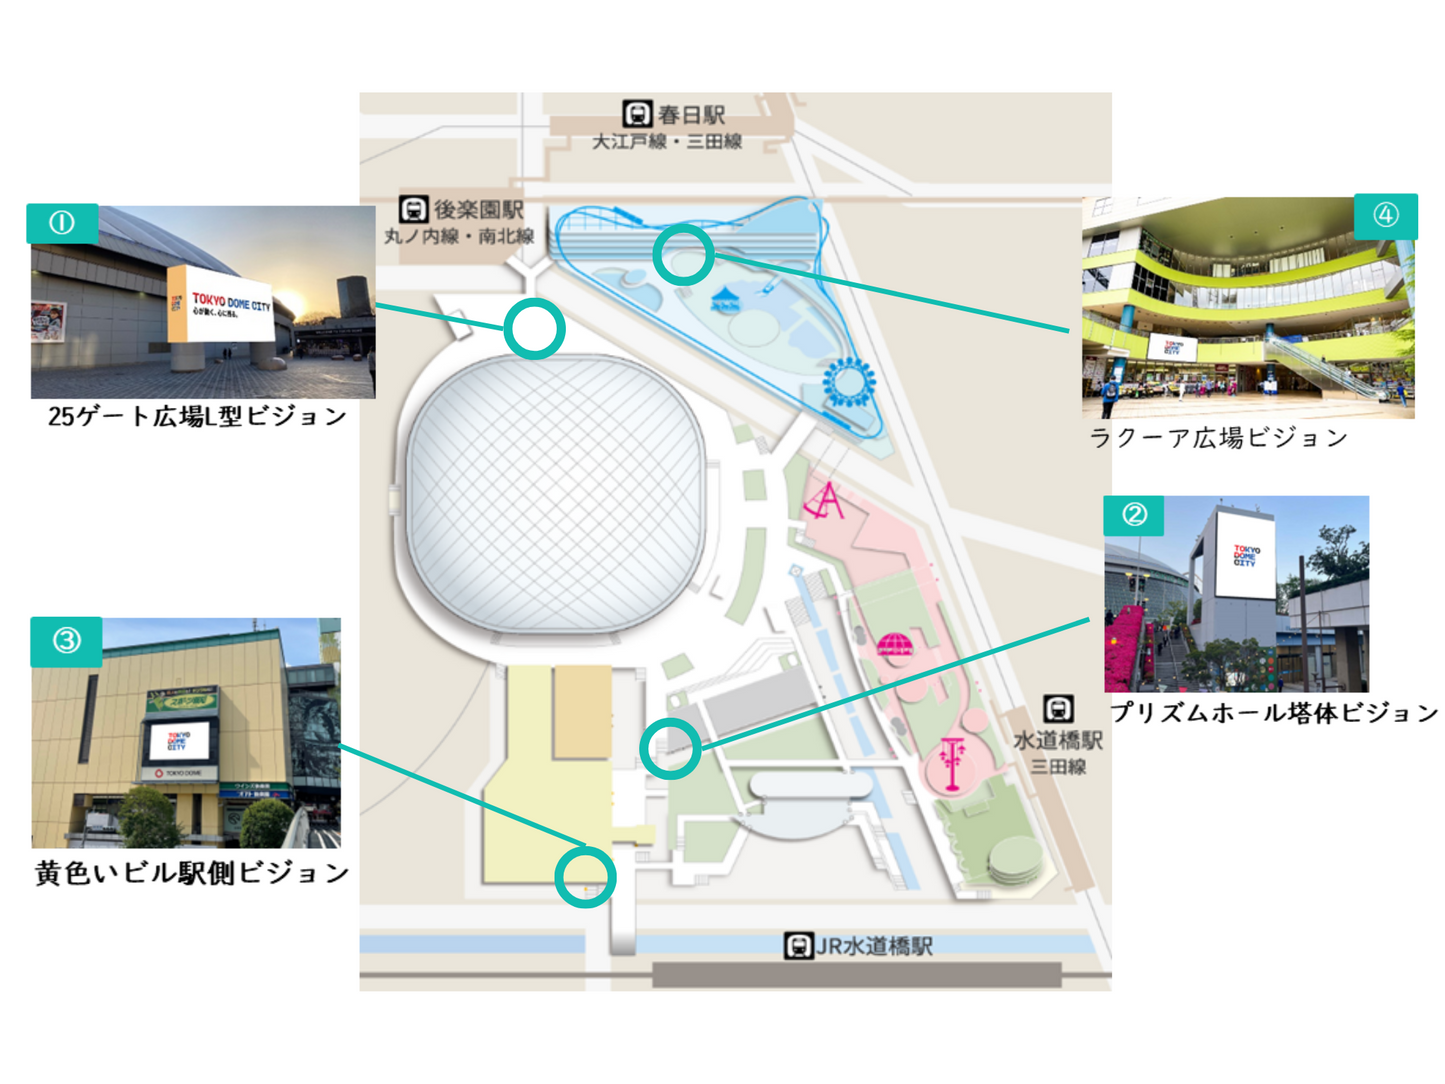 東京ドームシティビジョンズ 基本セット開放  黄色いビル駅側ビジョン